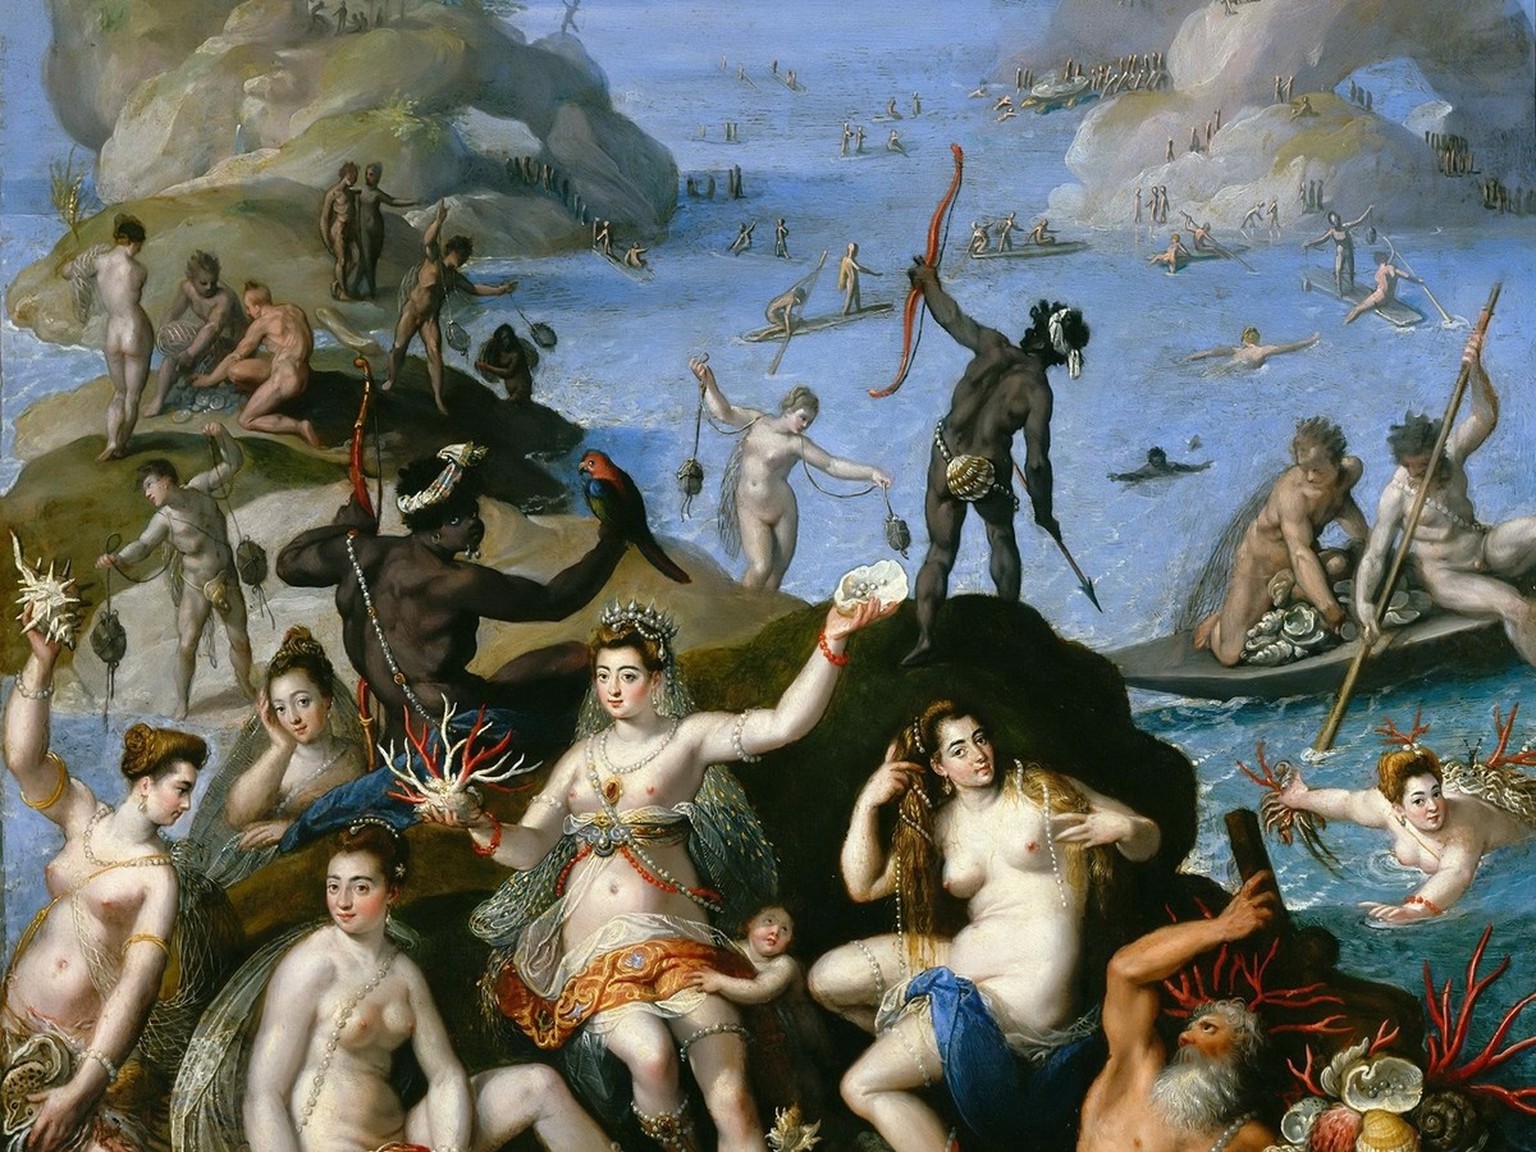 Jacopo Zucchis Allegorie der Entdeckung Amerikas, 1585 (Ausschnitt).
https://gallerix.org/storeroom/729189807/N/48790419/